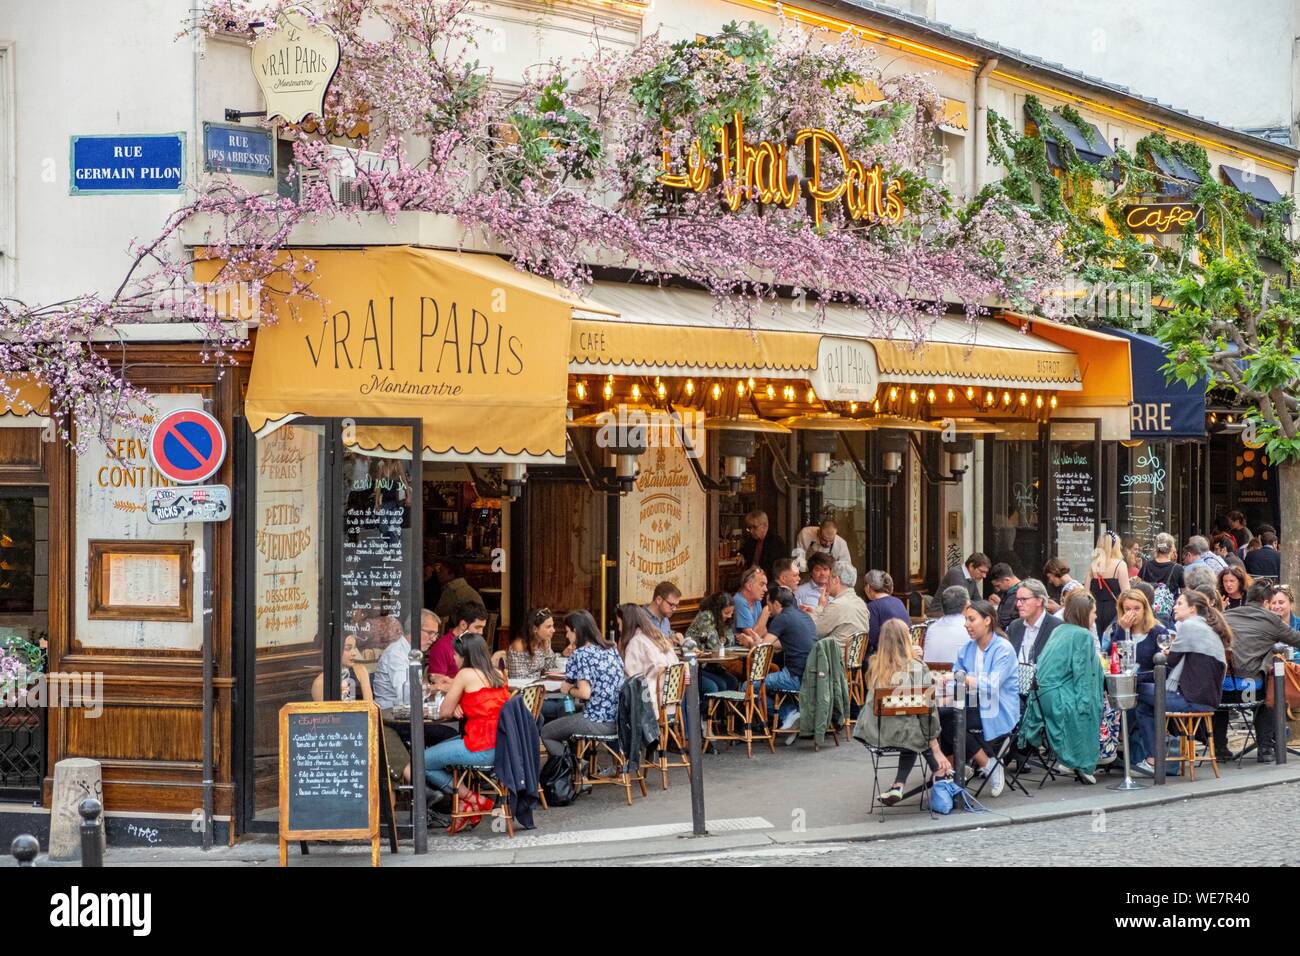 France, Paris, Montmartre district, cafe in the Rue des Abbesses, the Vrai Paris cafe Stock Photo